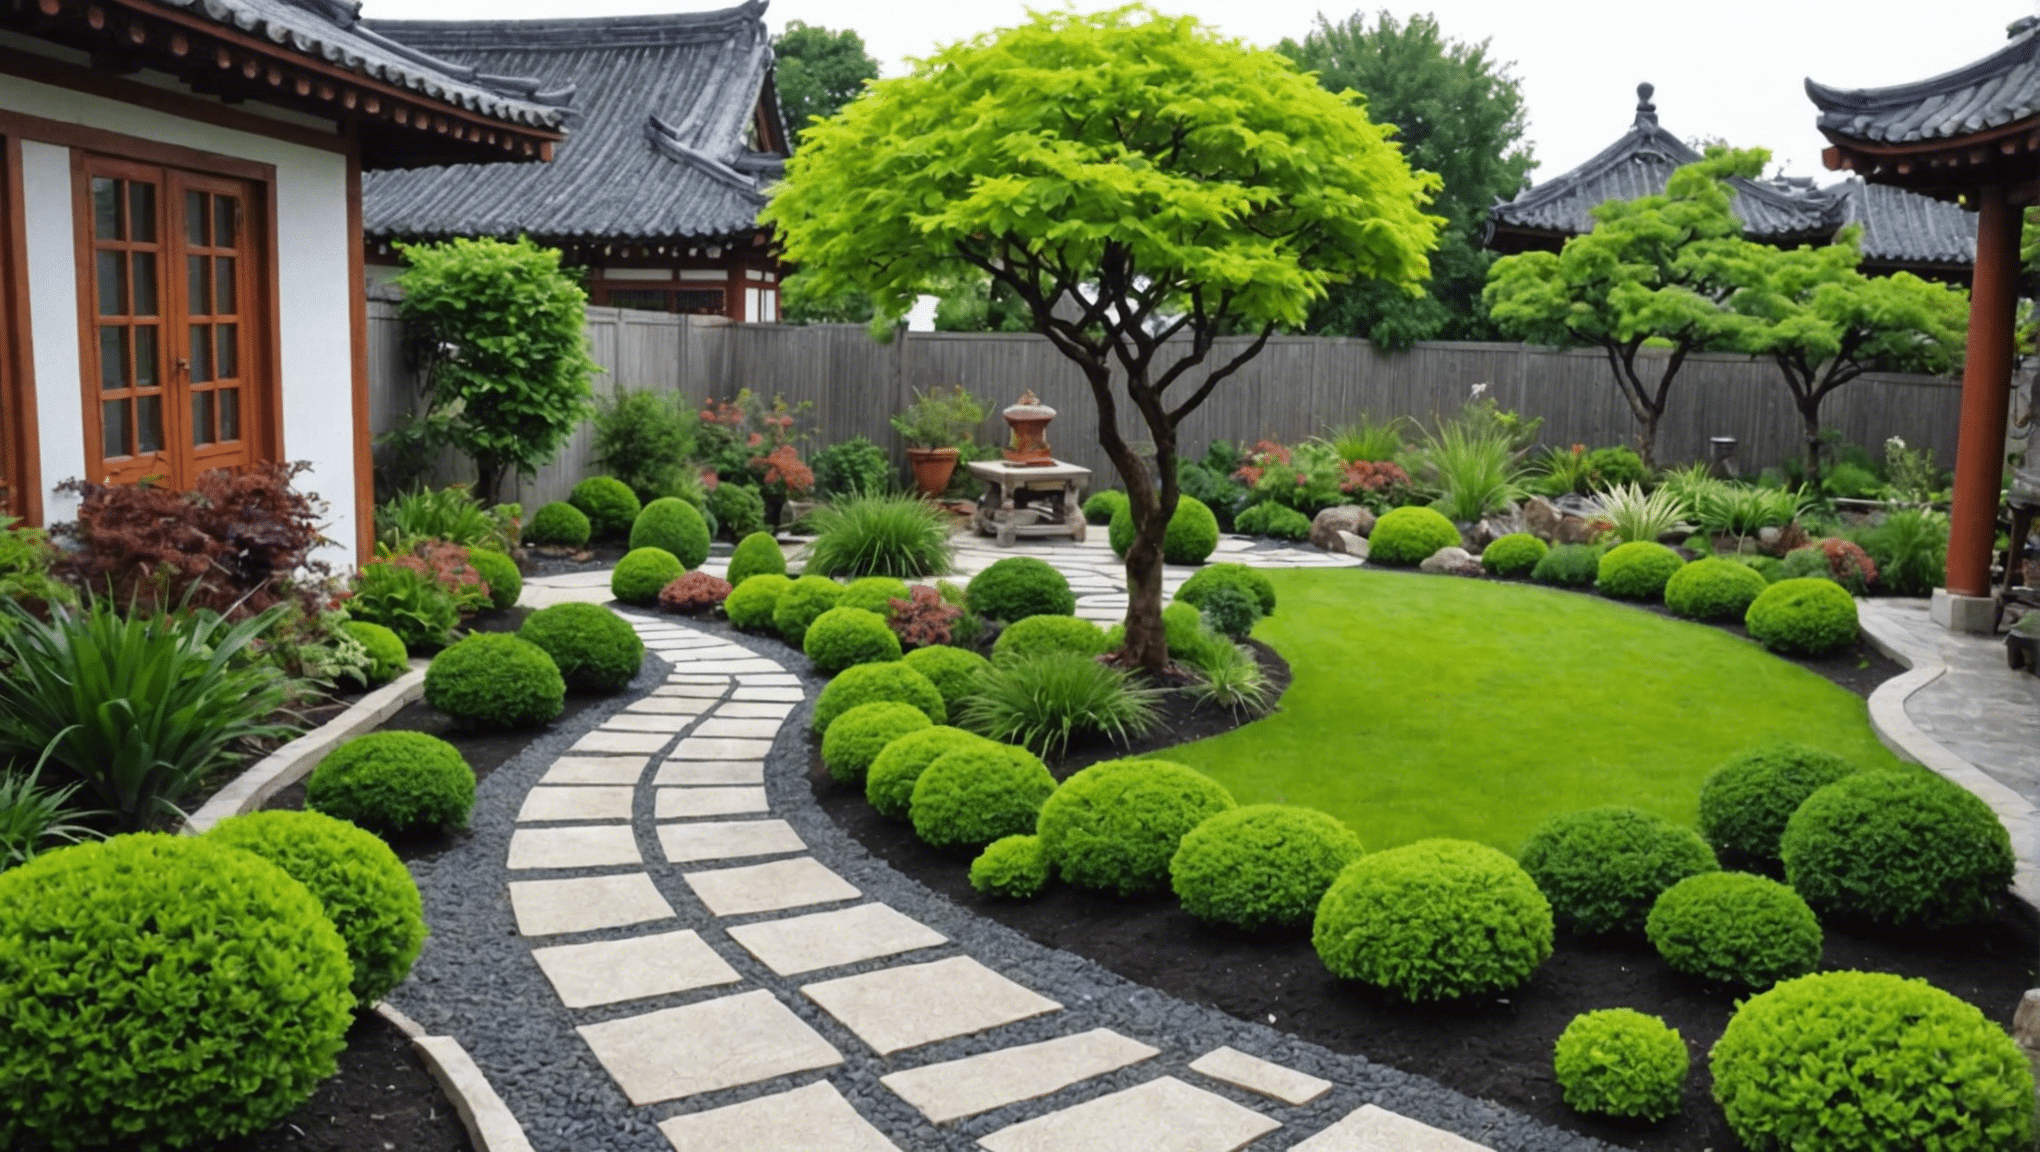 Descubra ideas creativas e inspiradoras de jardinería asiática para su espacio al aire libre con la inspiración y los consejos de nuestros expertos. desde jardines japoneses tradicionales hasta diseños zen modernos, encuentre la inspiración perfecta para su oasis al aire libre.